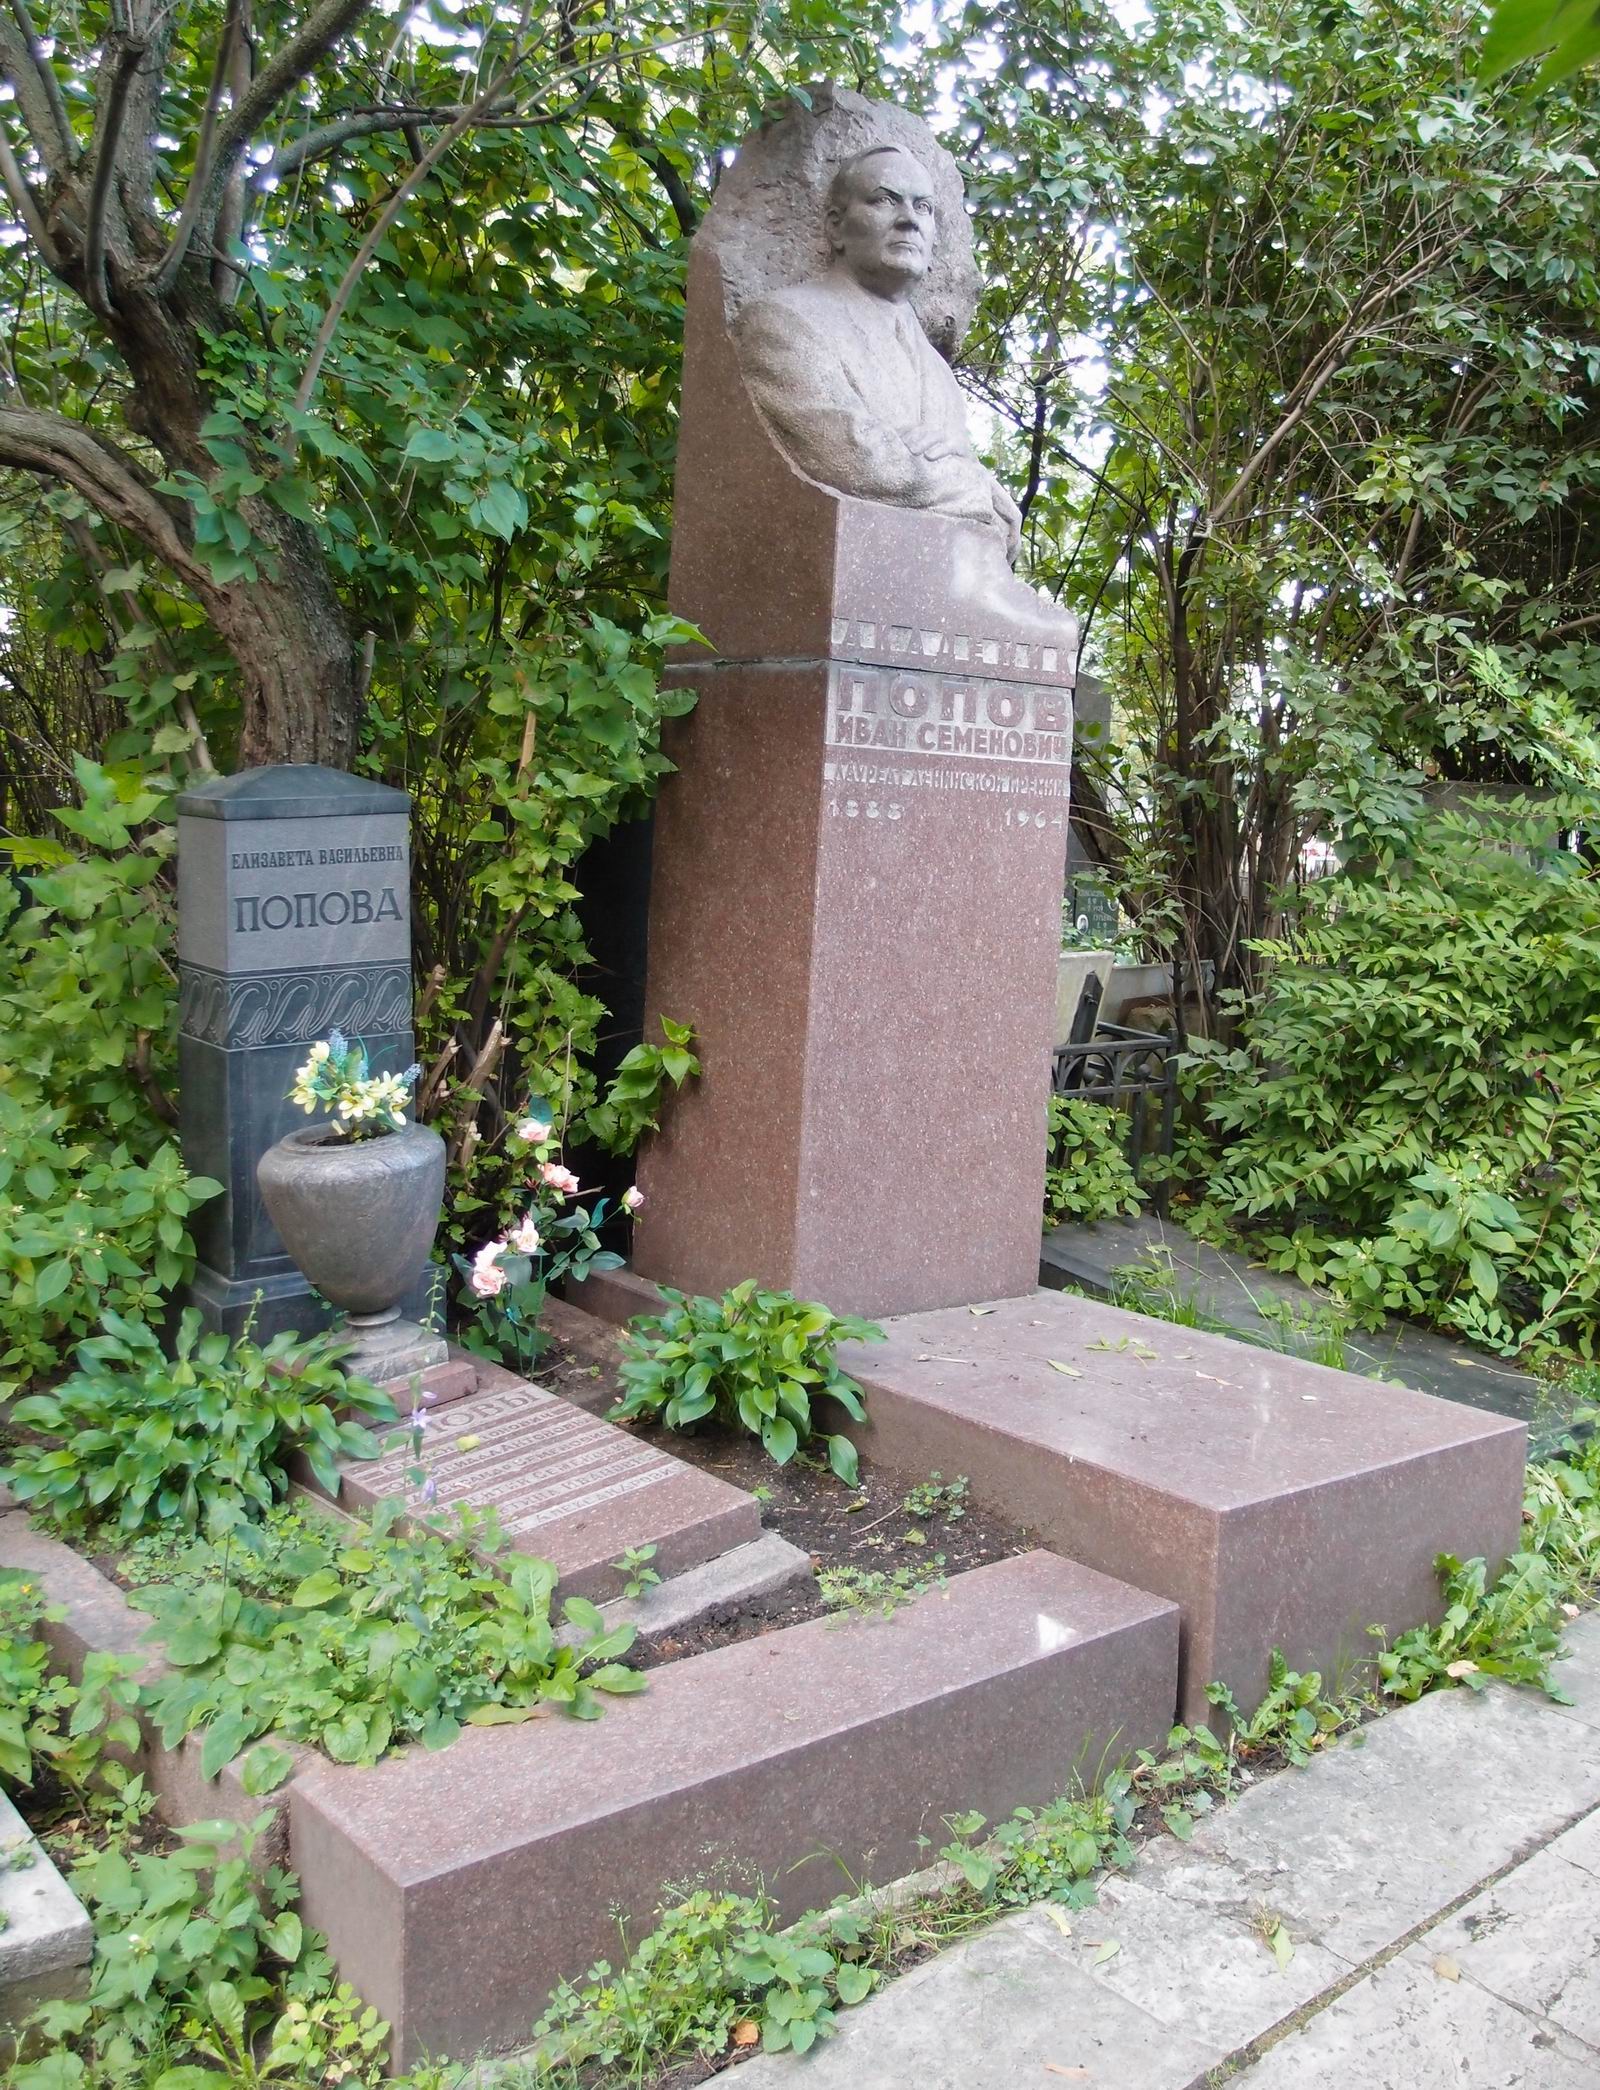 Памятник на могиле Попова И.С. (1888-1964), ск. О.Манизер, арх. М.Волков, Ю.Лапин, на Новодевичьем кладбище (2-35-6). Нажмите левую кнопку мыши чтобы увидеть фрагмент памятника.